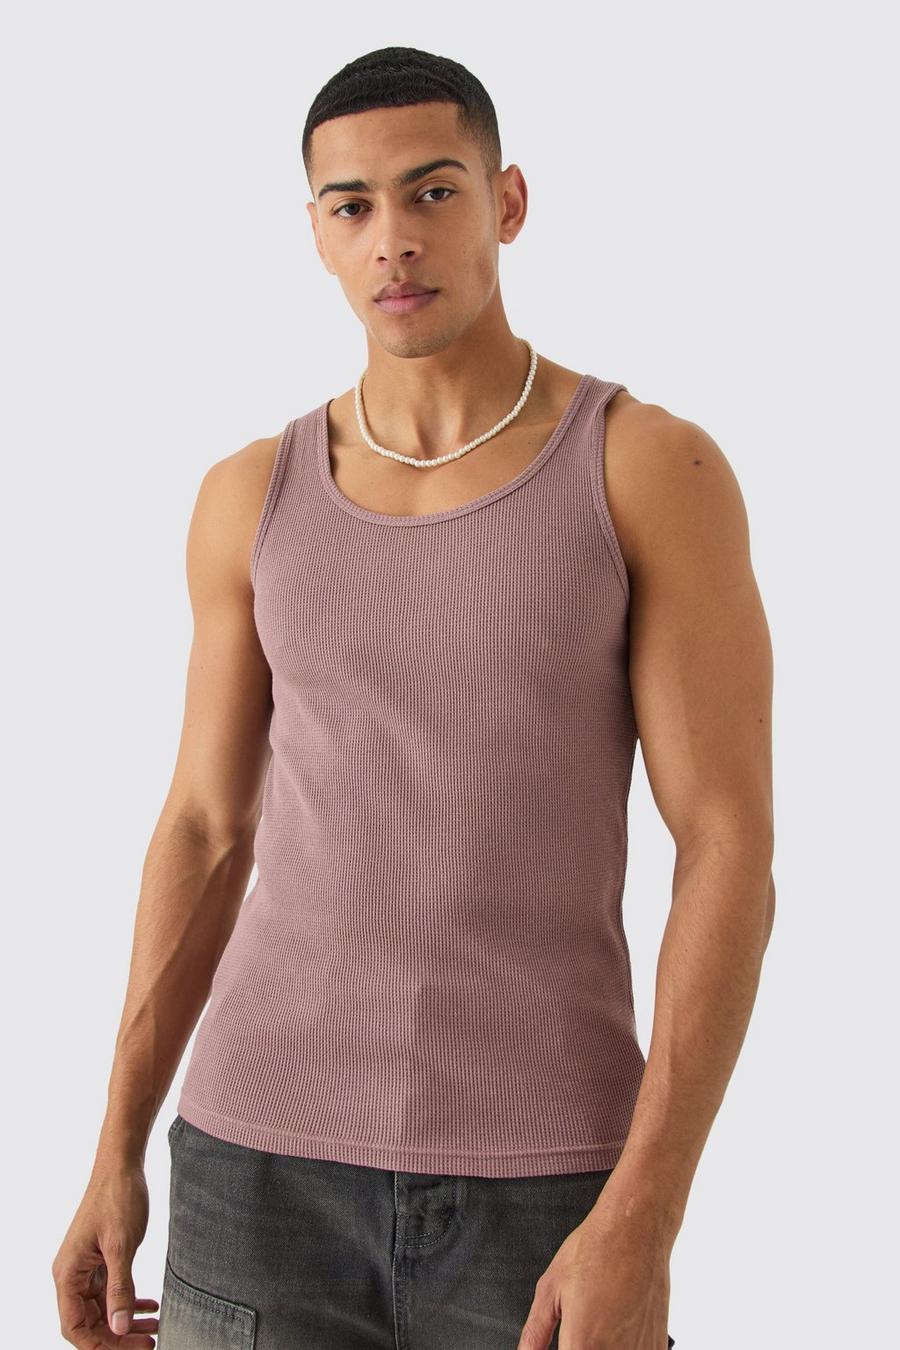 Men's Tank Tops, Sleeveless Shirts for Men